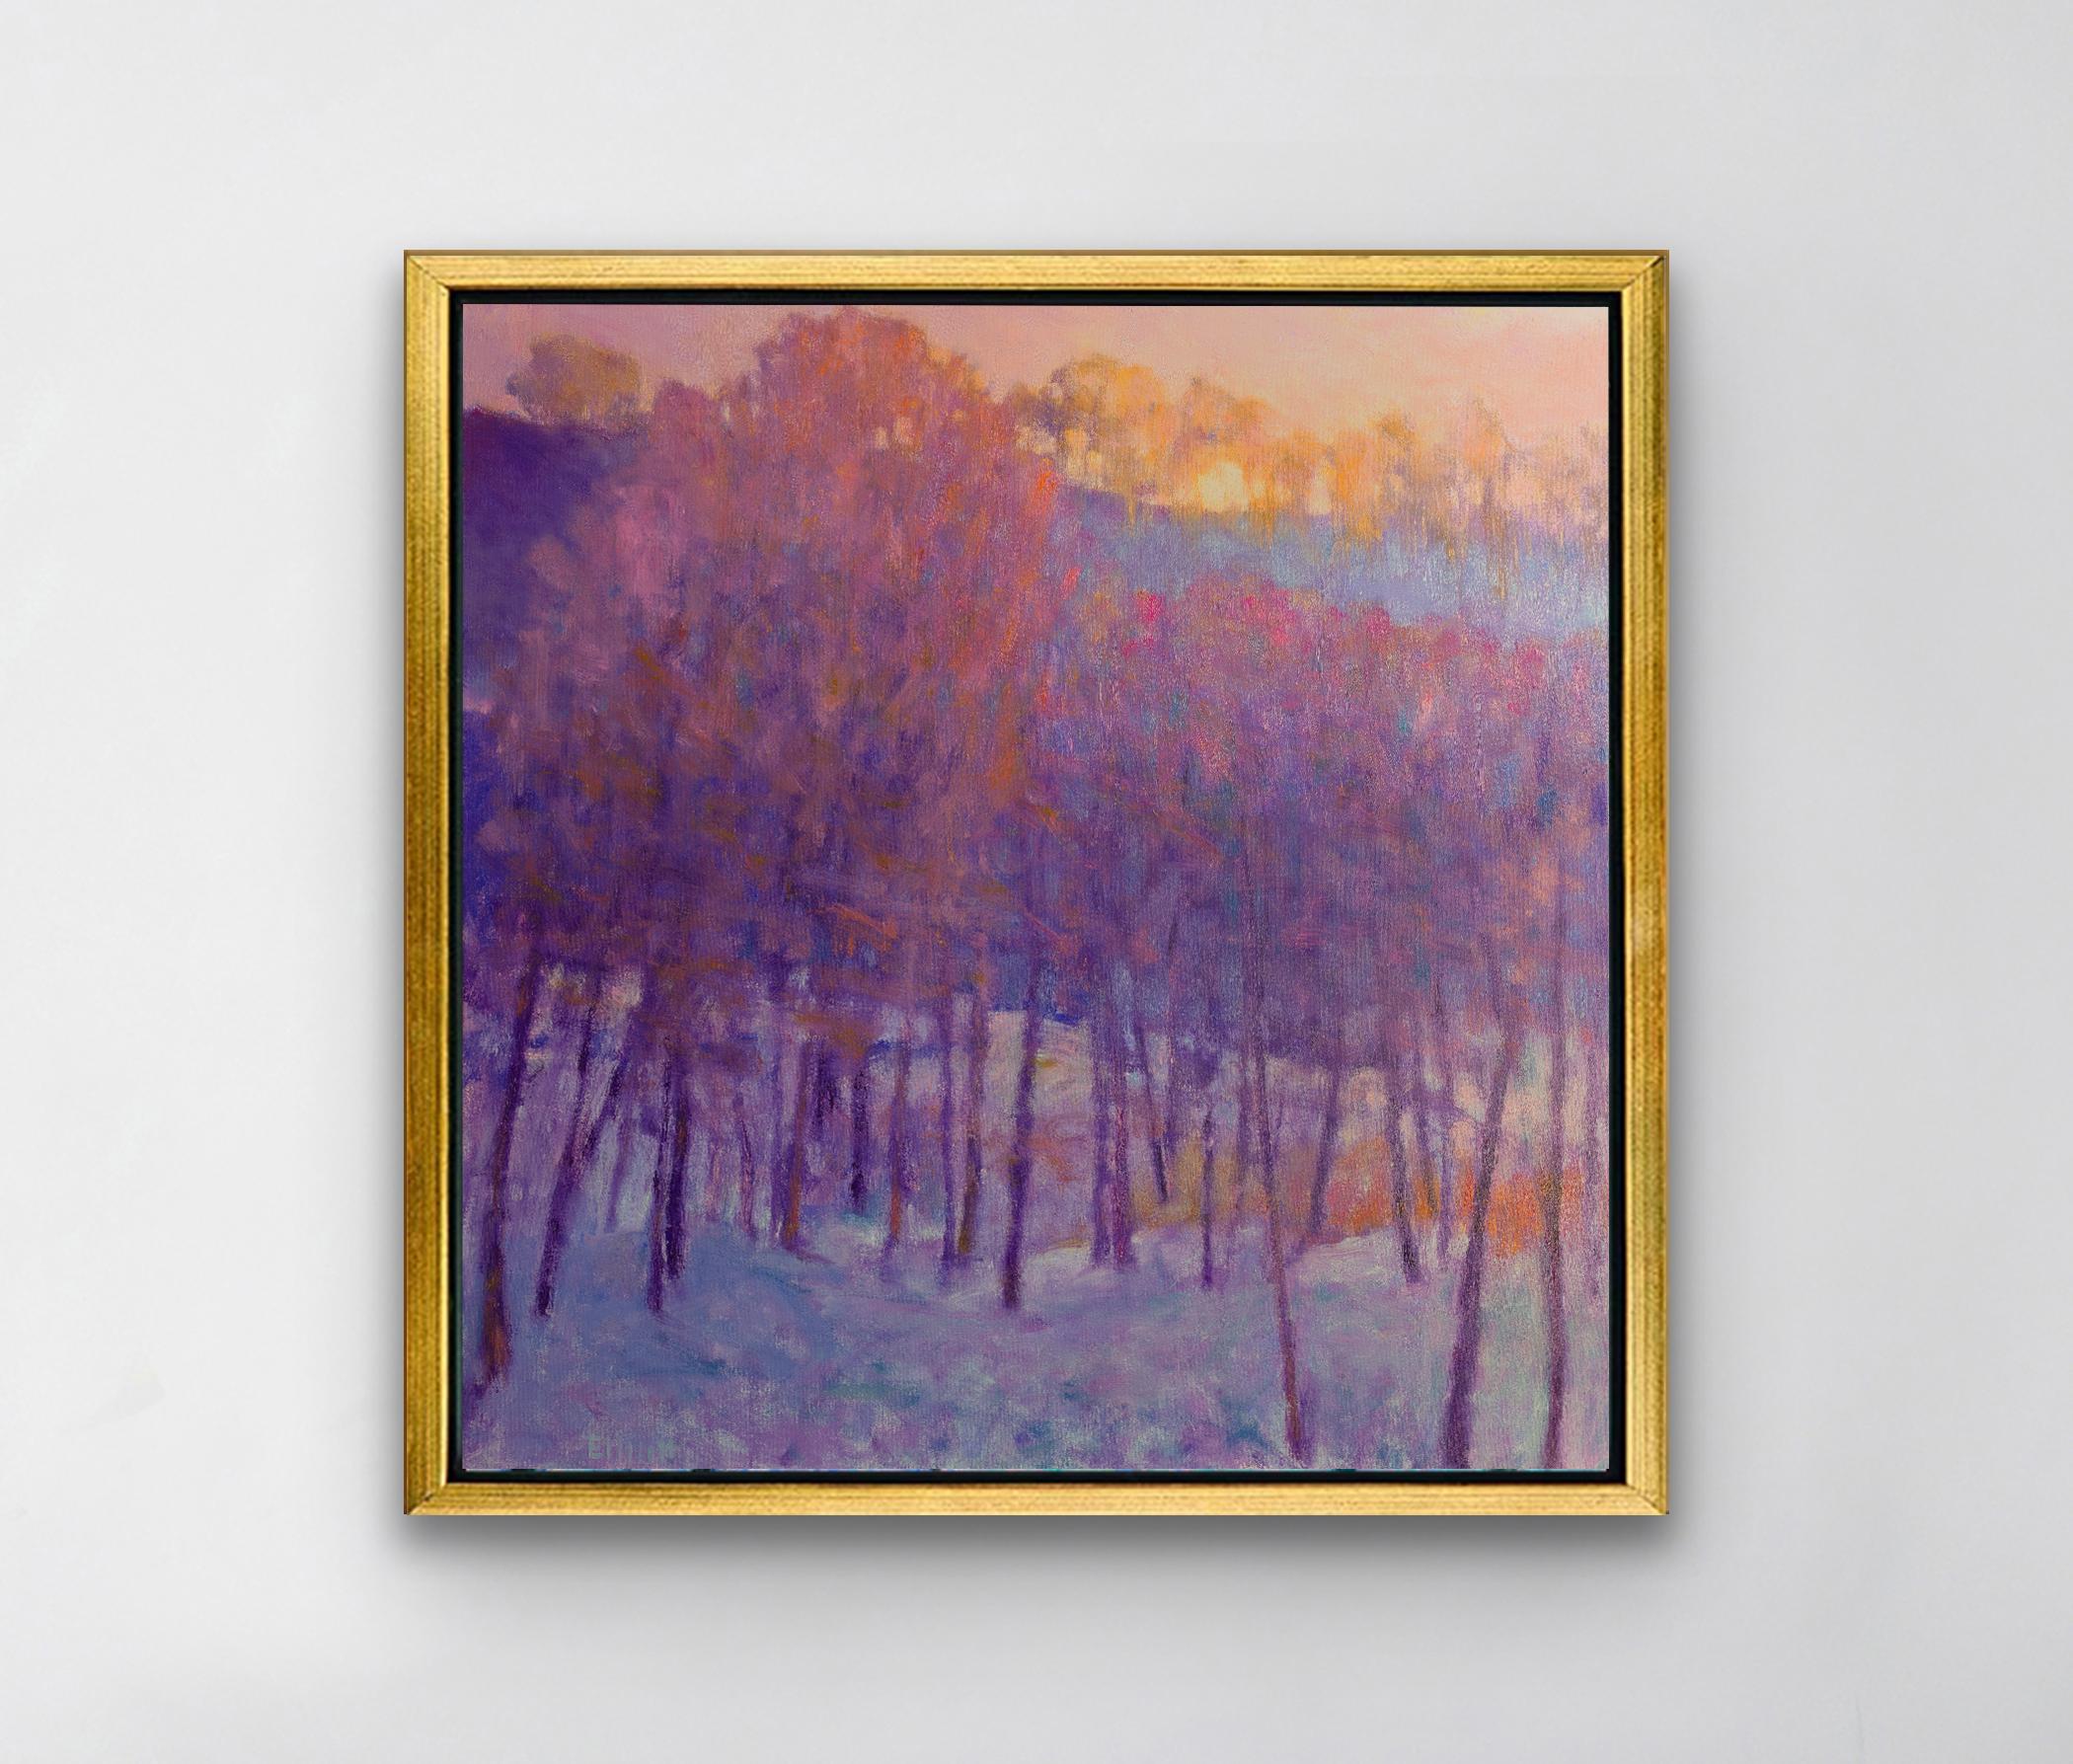 Diese abstrakte Landschaft von Ken Elliott ist ein Druck in limitierter Auflage. Es zeigt einen Wald mit Bäumen unter einer Schneedecke und einen zarten Sonnenuntergang über den Wipfeln des Waldes. Die dünnen Baumstämme sind in einem tiefen Violett